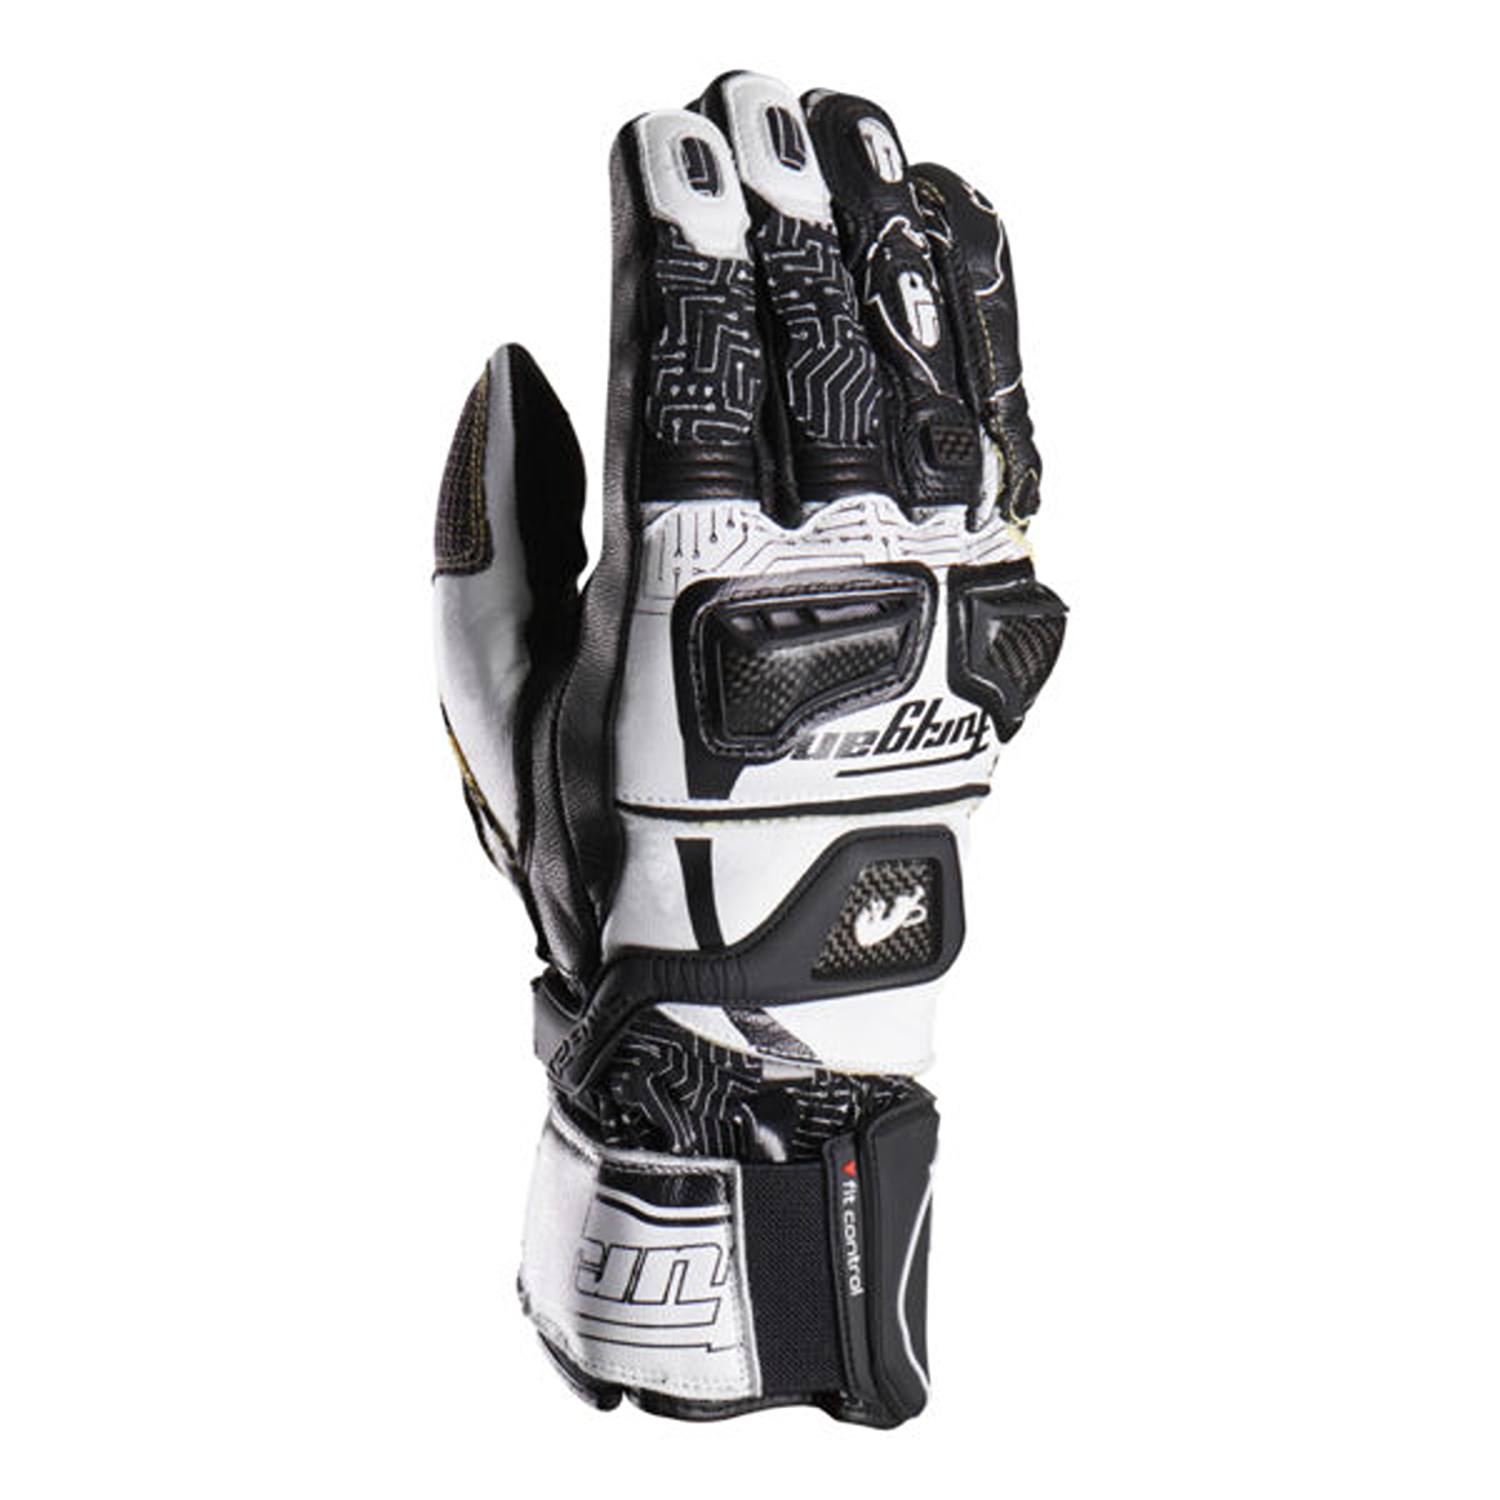 Furygan Styg20 X Kevlar Gloves Black White Size S